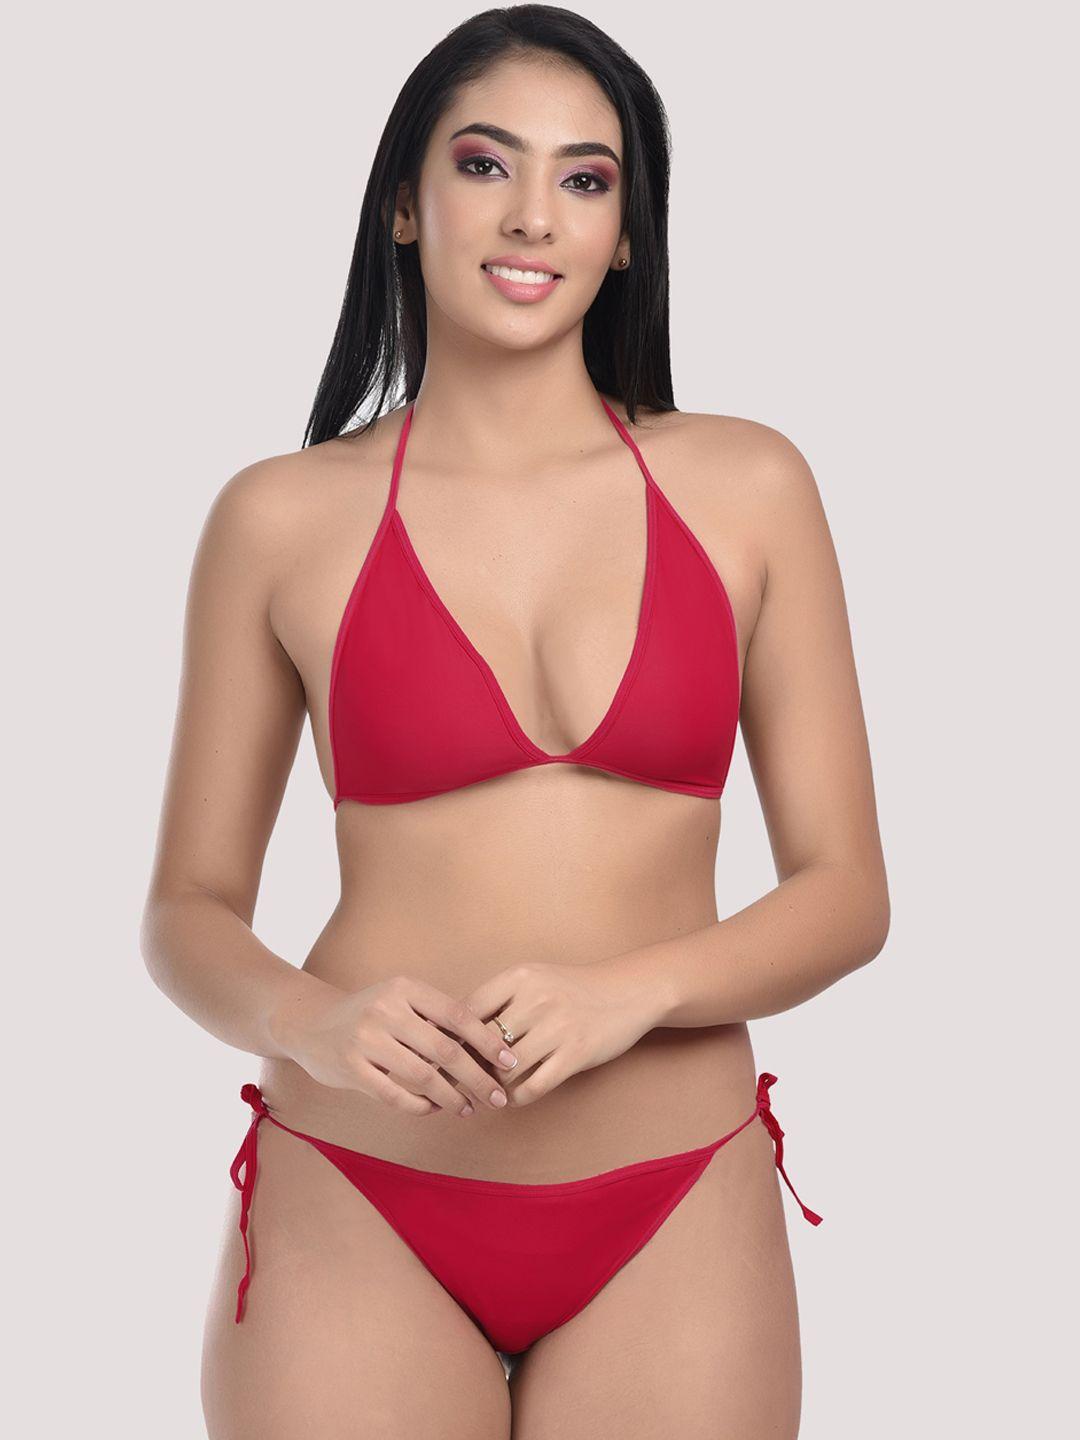 styfun women maroon solid lingerie set